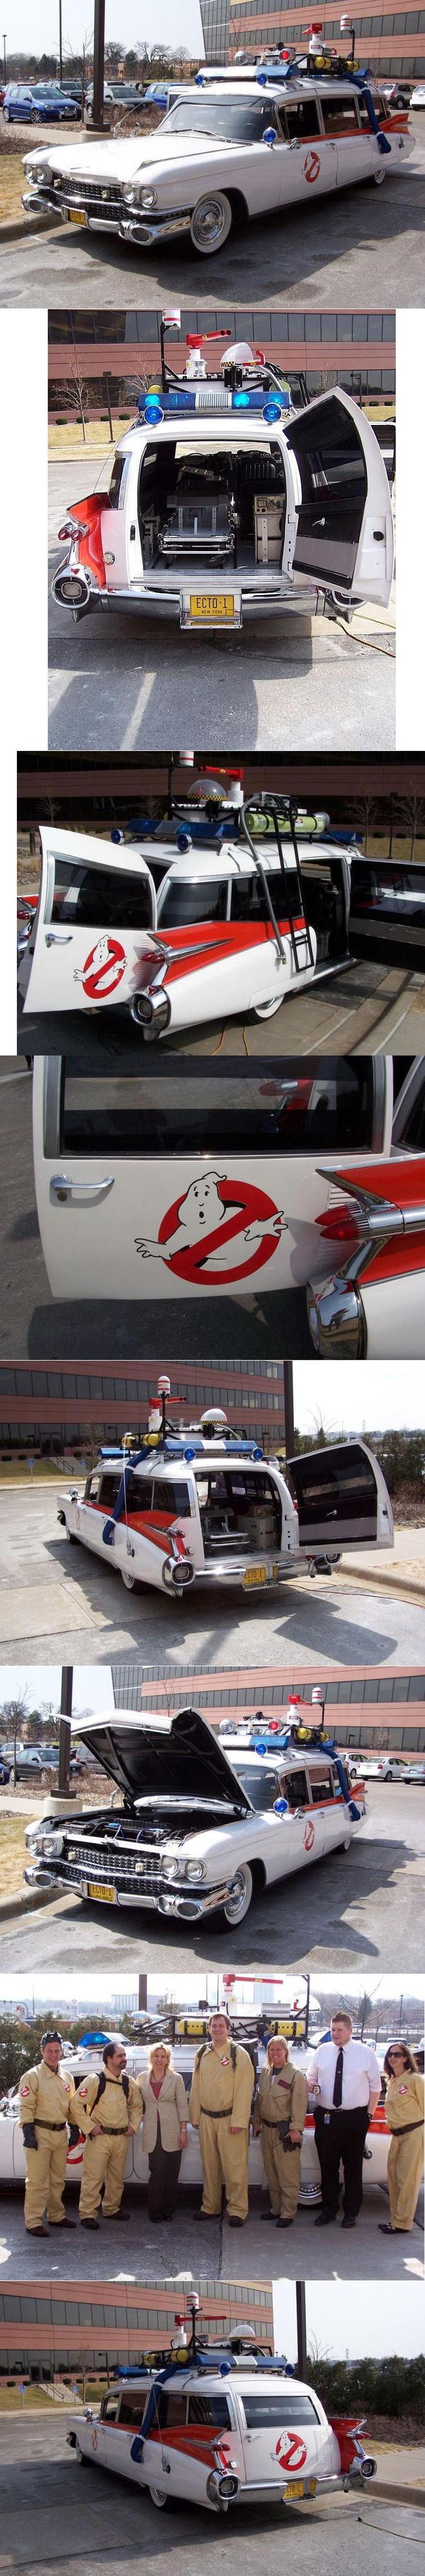 Une reproduction de la voiture de Ghostbusters.